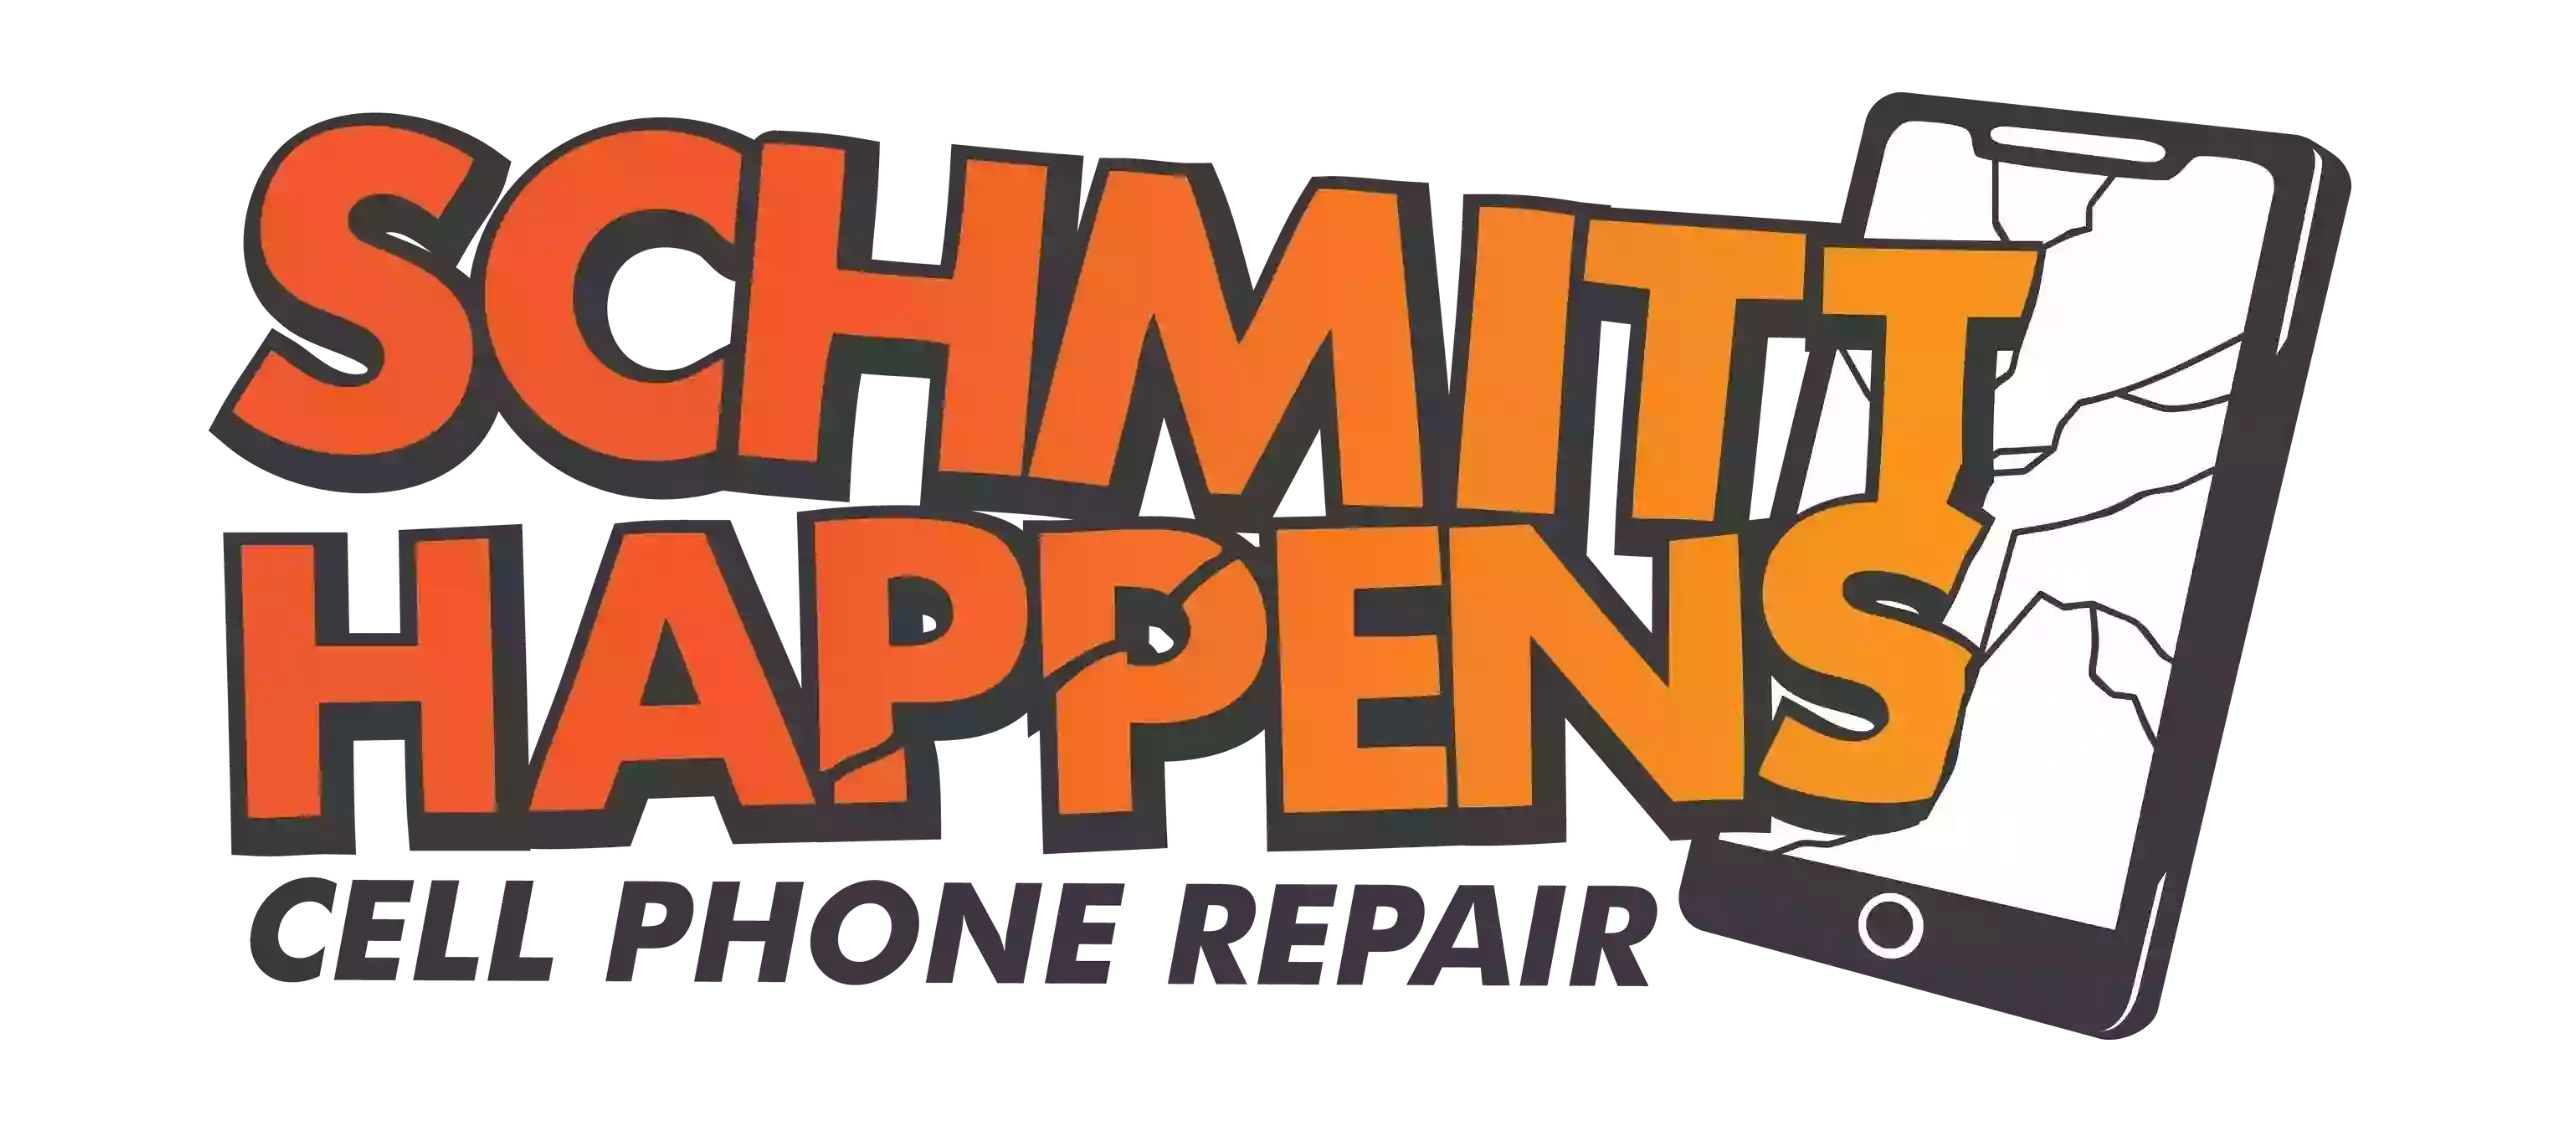 Schmitt Happens Cell Phone Repair